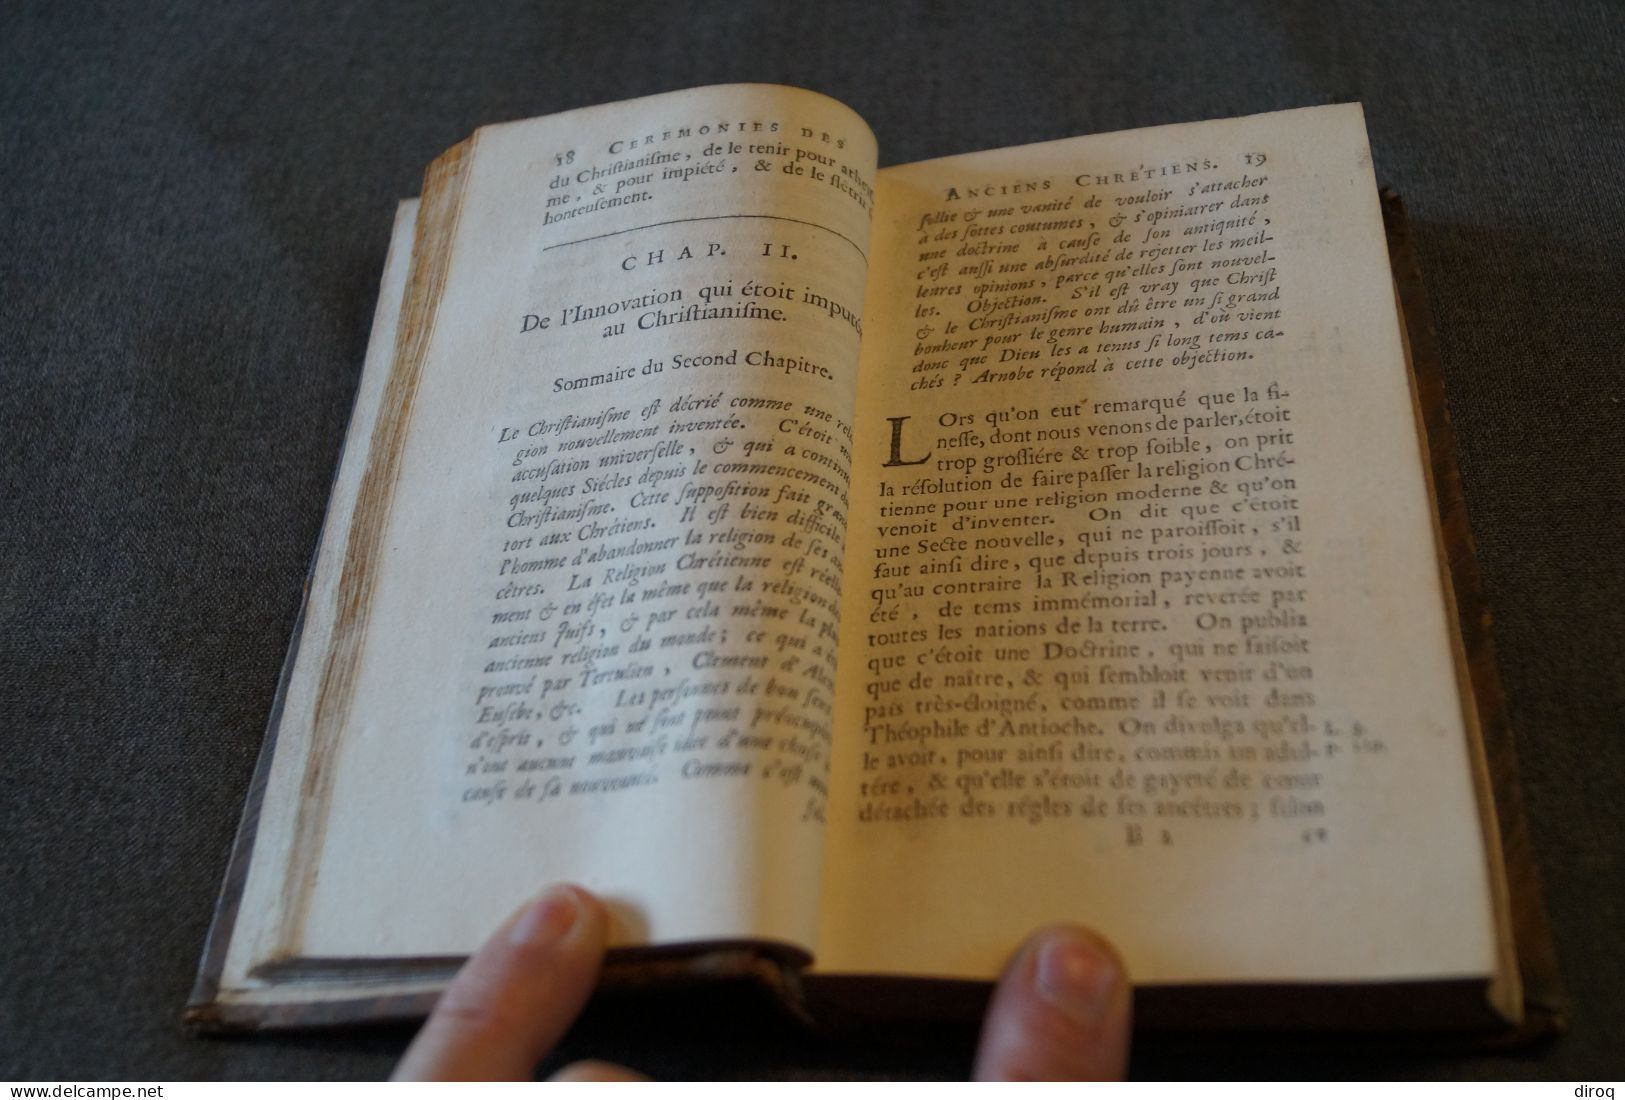 RARE,1711,la religion des Anciens chrétiens,Amsterdam,Laques Desbordes,Guillaume Cave,400 pages,17/10Cm